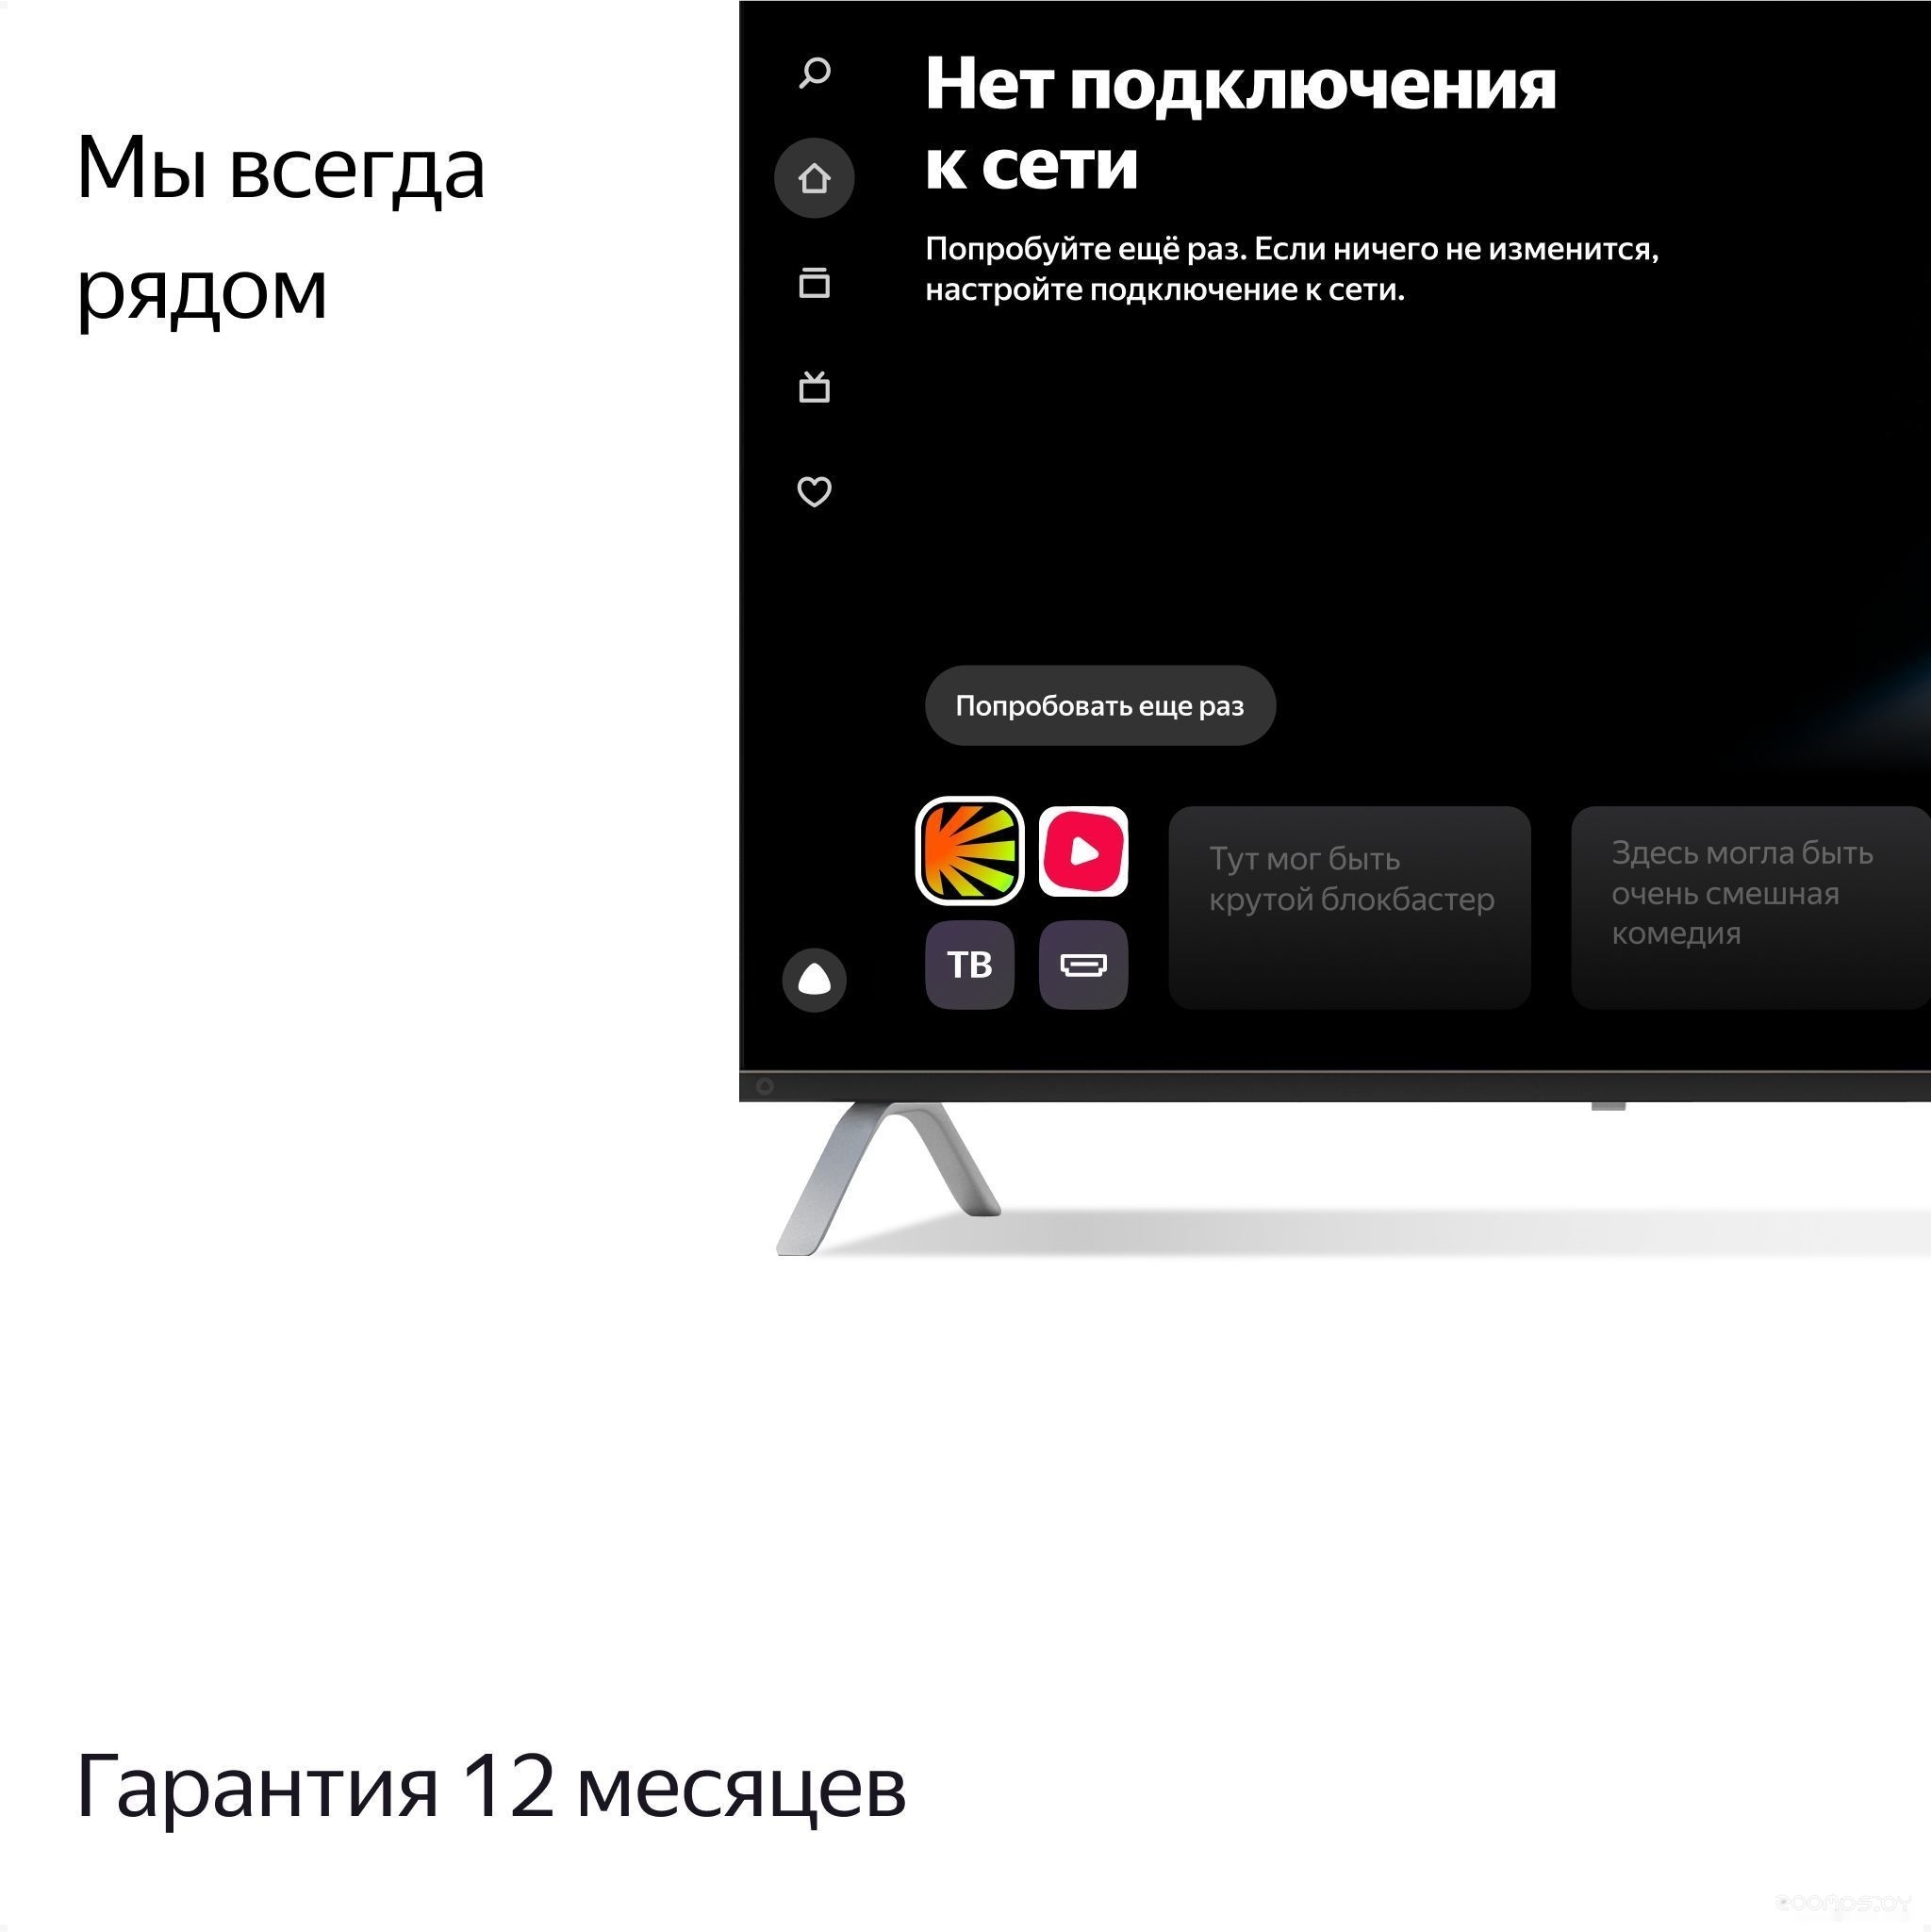 Телевизор Яндекс с Алисой 55 в  магазине Терабит Могилев